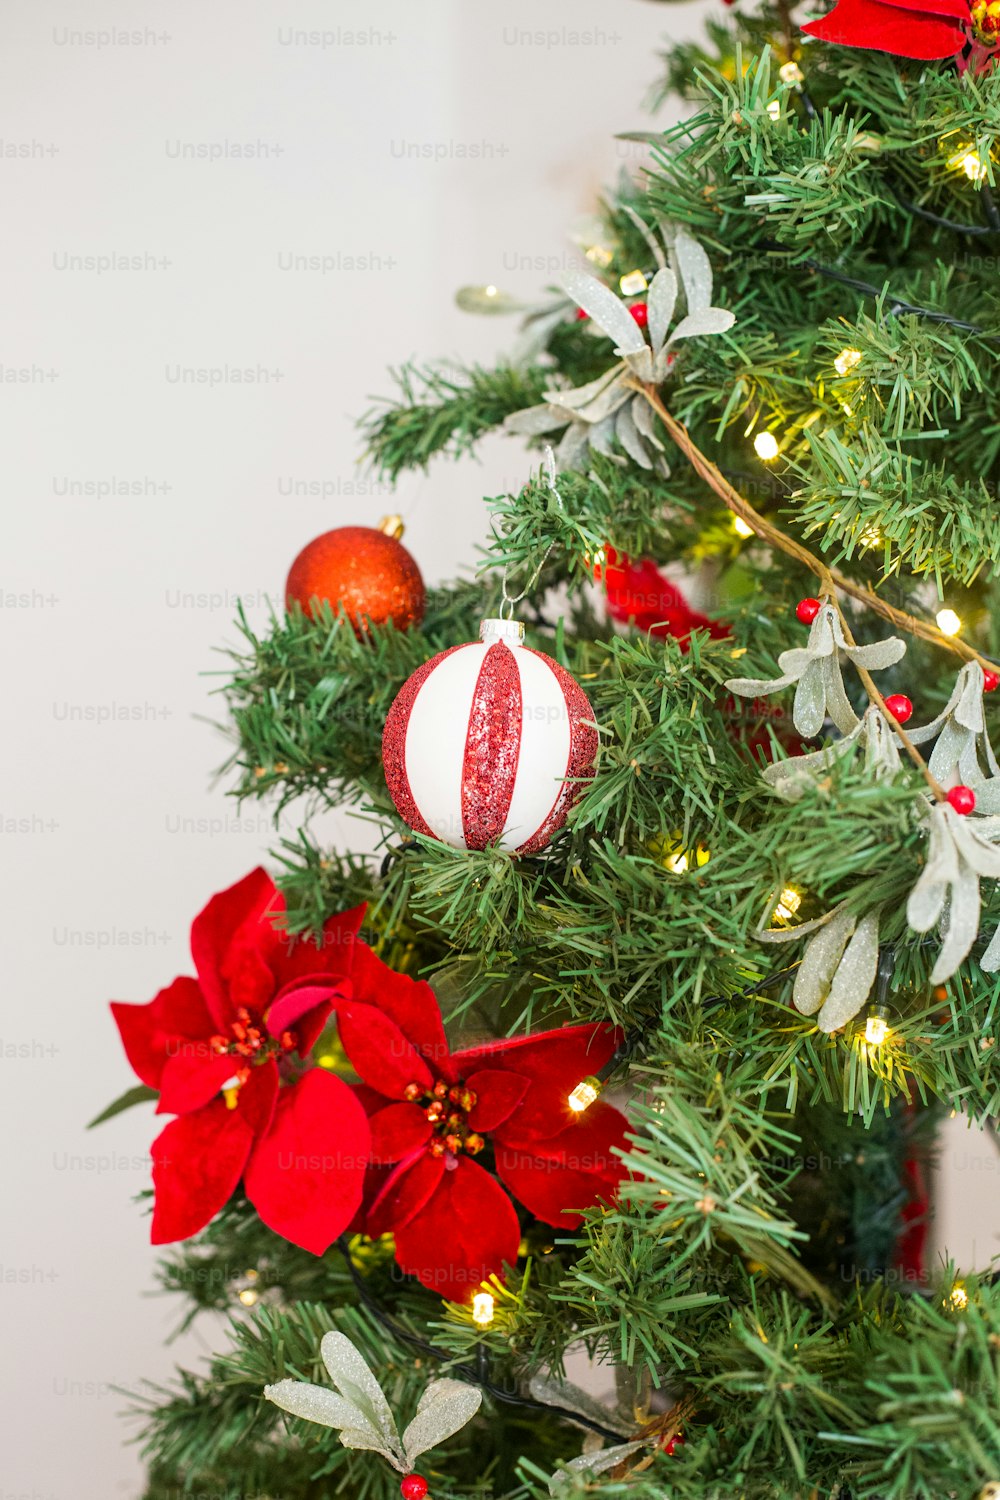 Un albero di Natale decorato con ornamenti rossi e bianchi